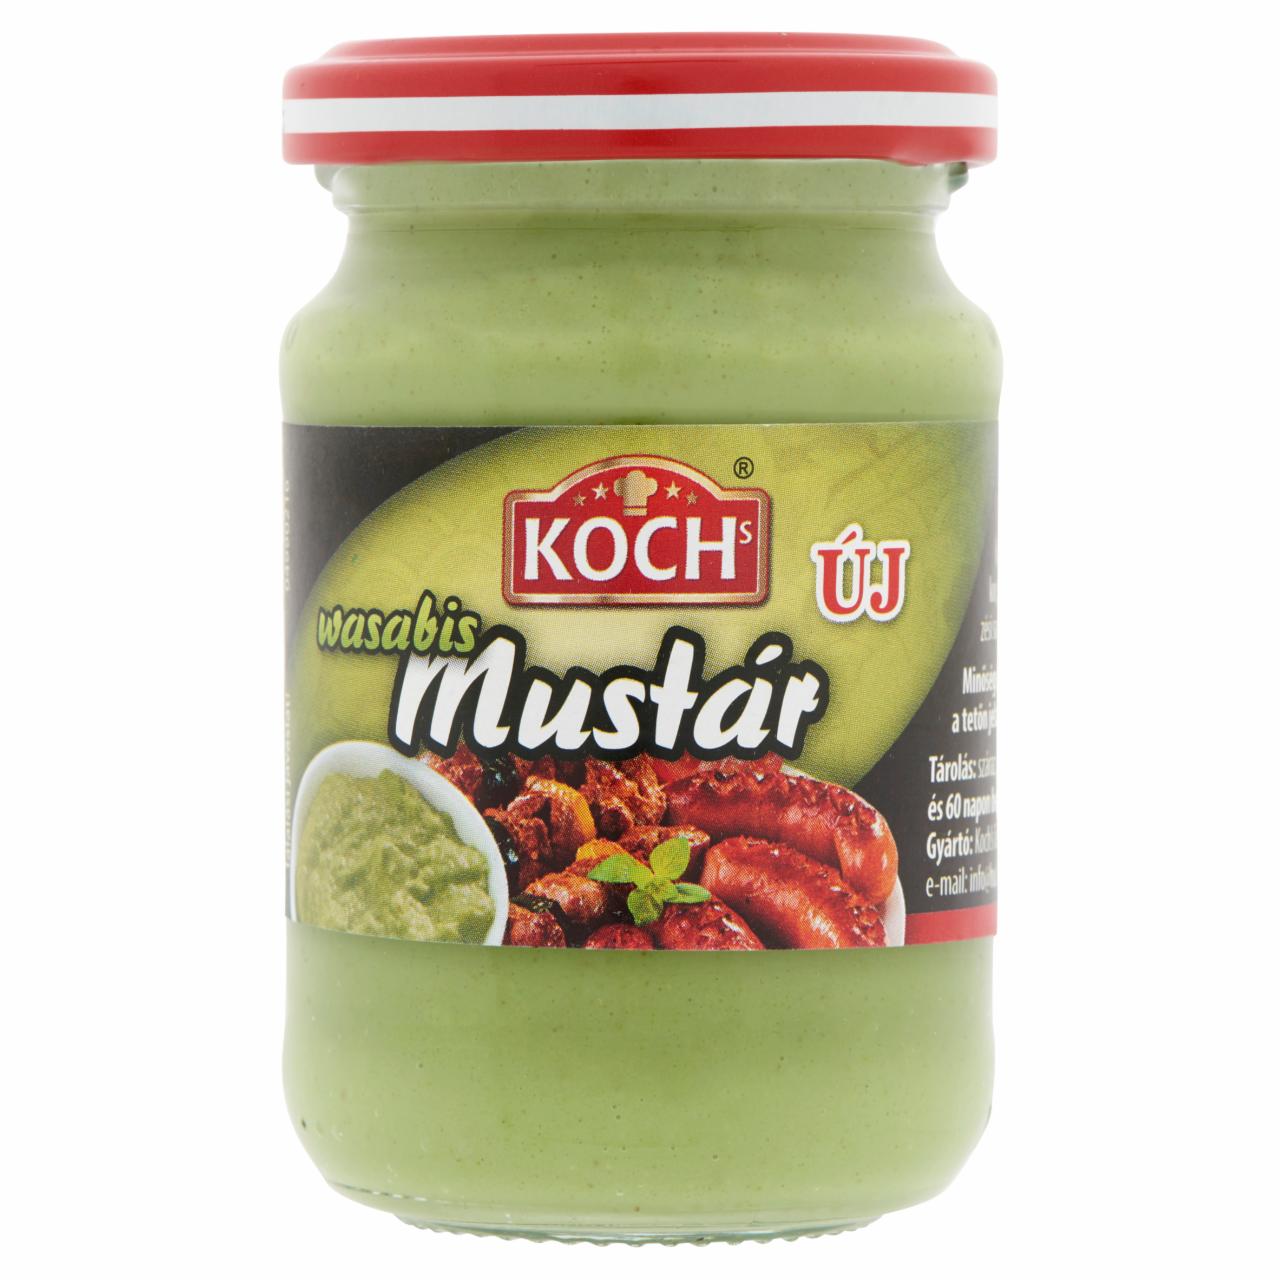 Képek - KOCHs wasabis mustár 95 g